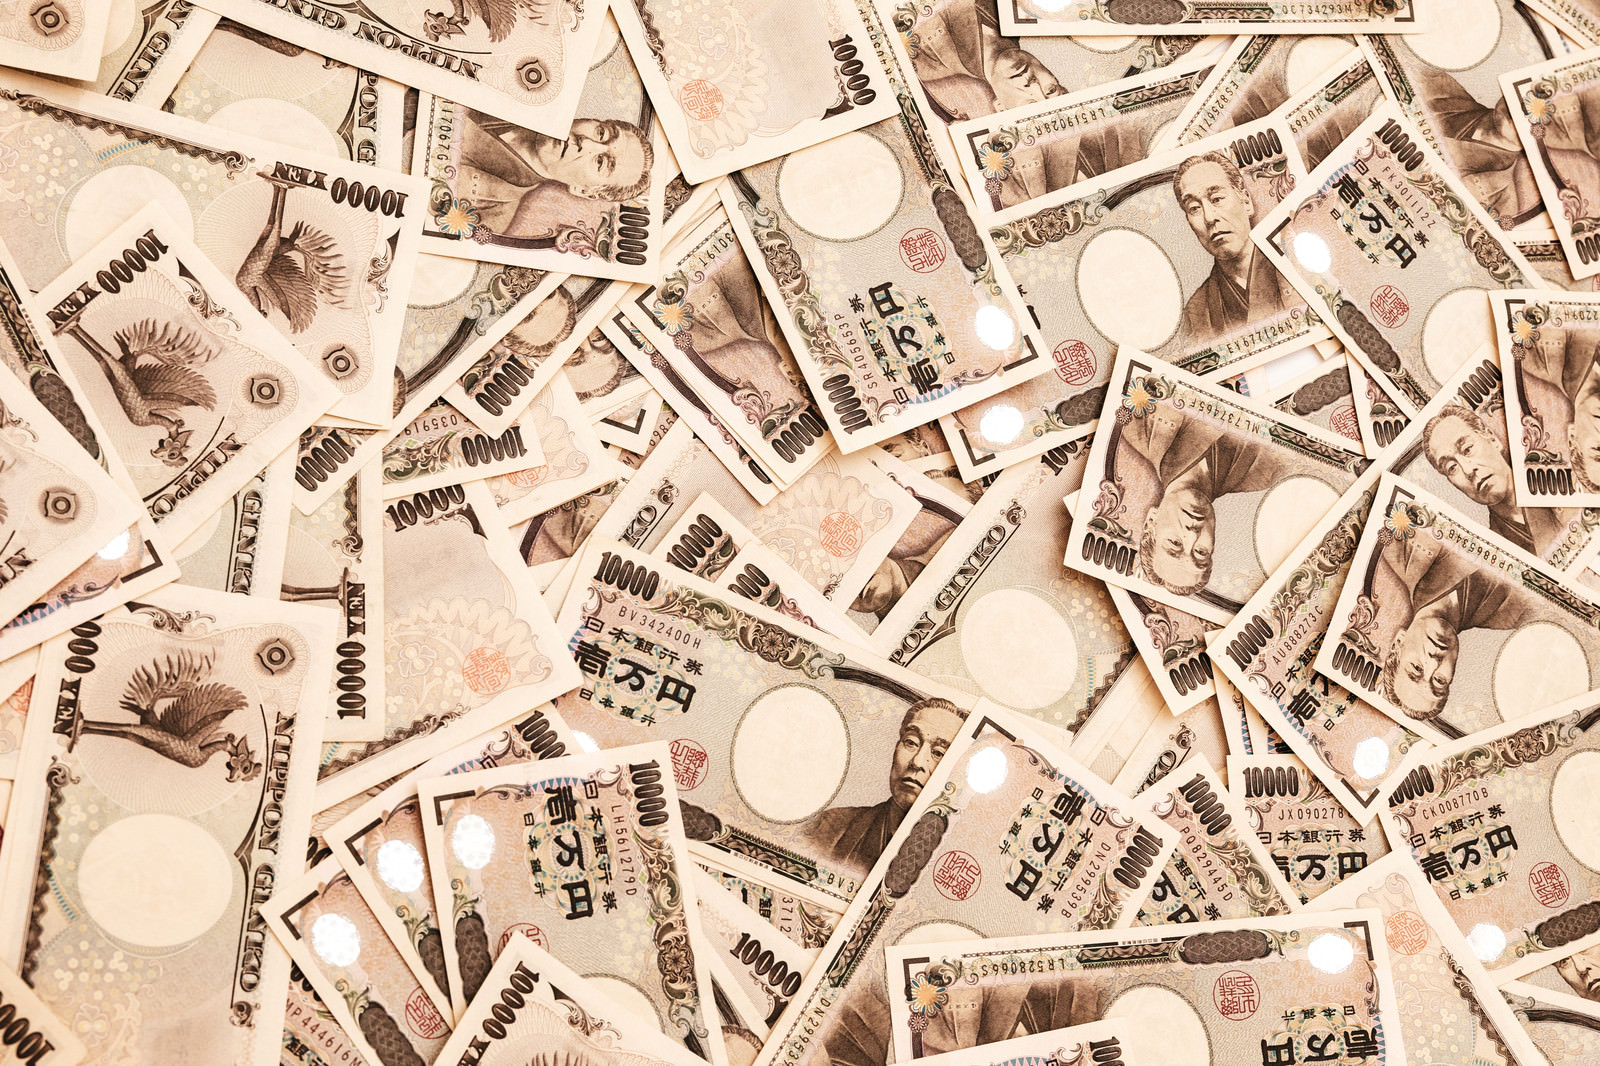 「床一面に散らばった壱万円札」の写真